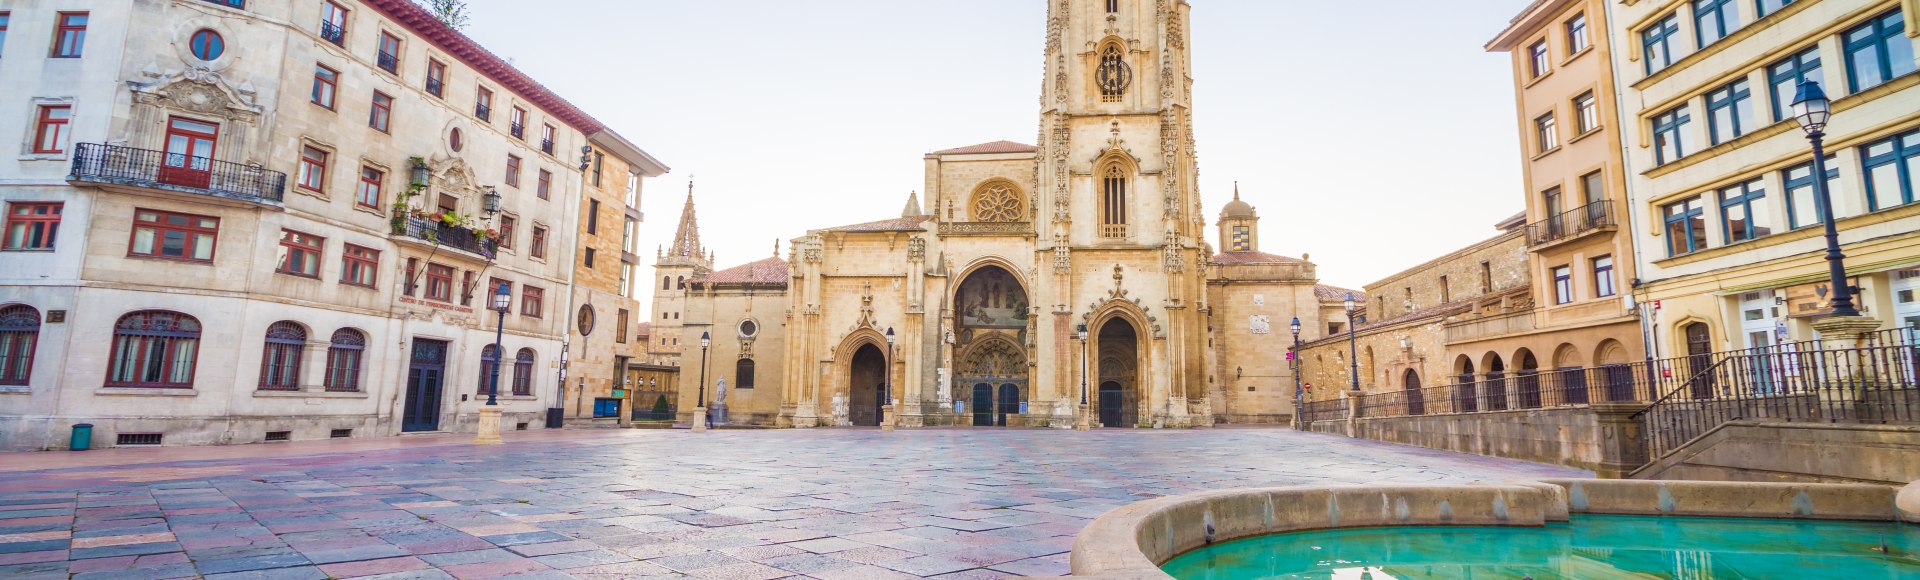 Blick auf die Kathedrale von Oviedo, Spanien, © LucVi – stock.adobe.com